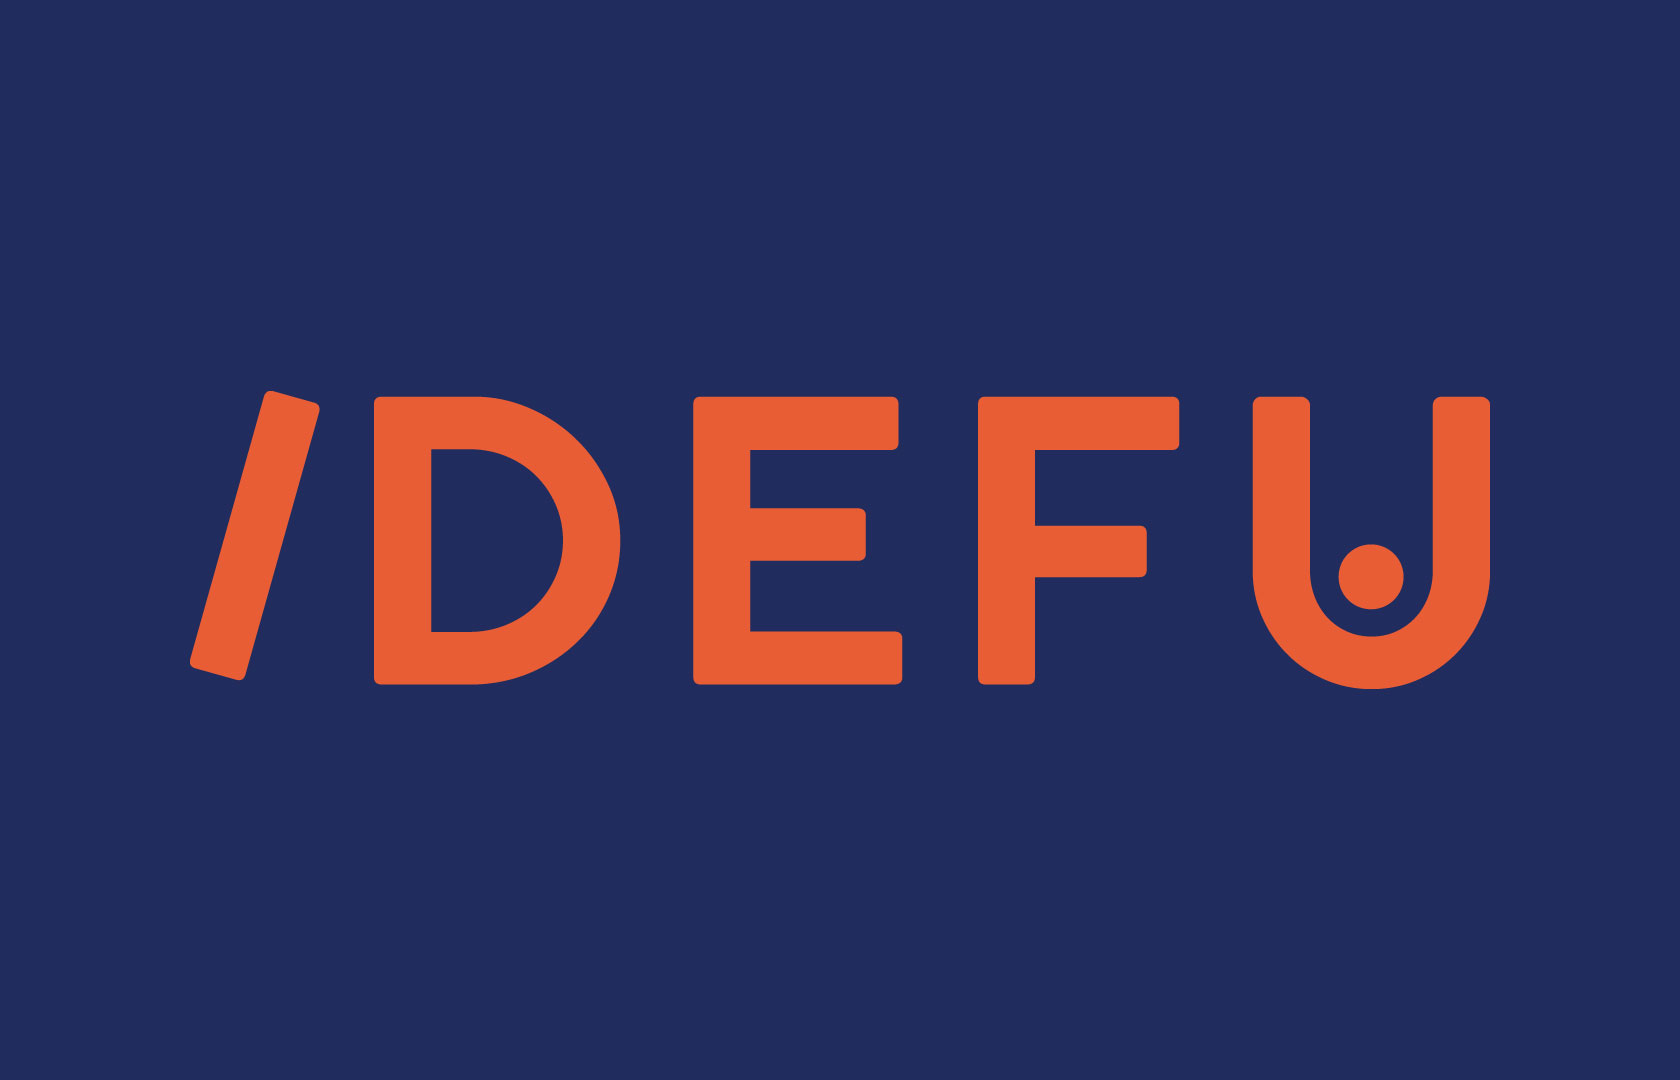 Idefu-logo_blue_bg